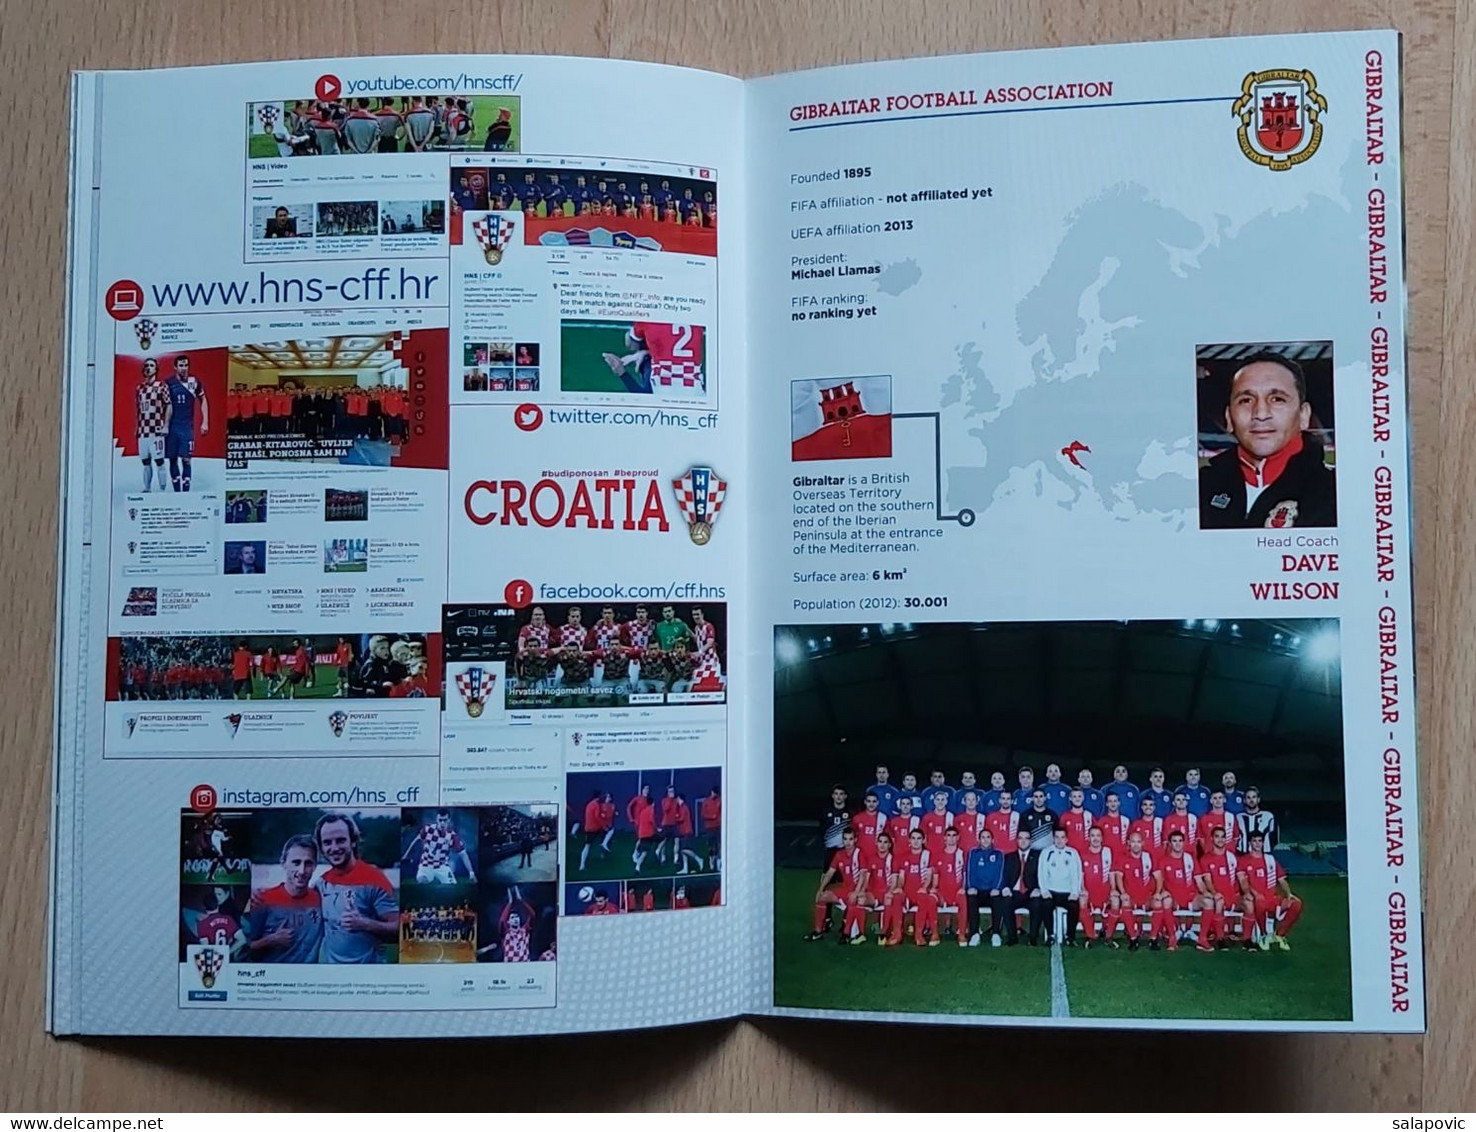 CROATIA V Gibraltar 2015 FRIENDLY FOOTBALL MATCH PROGRAM - Books